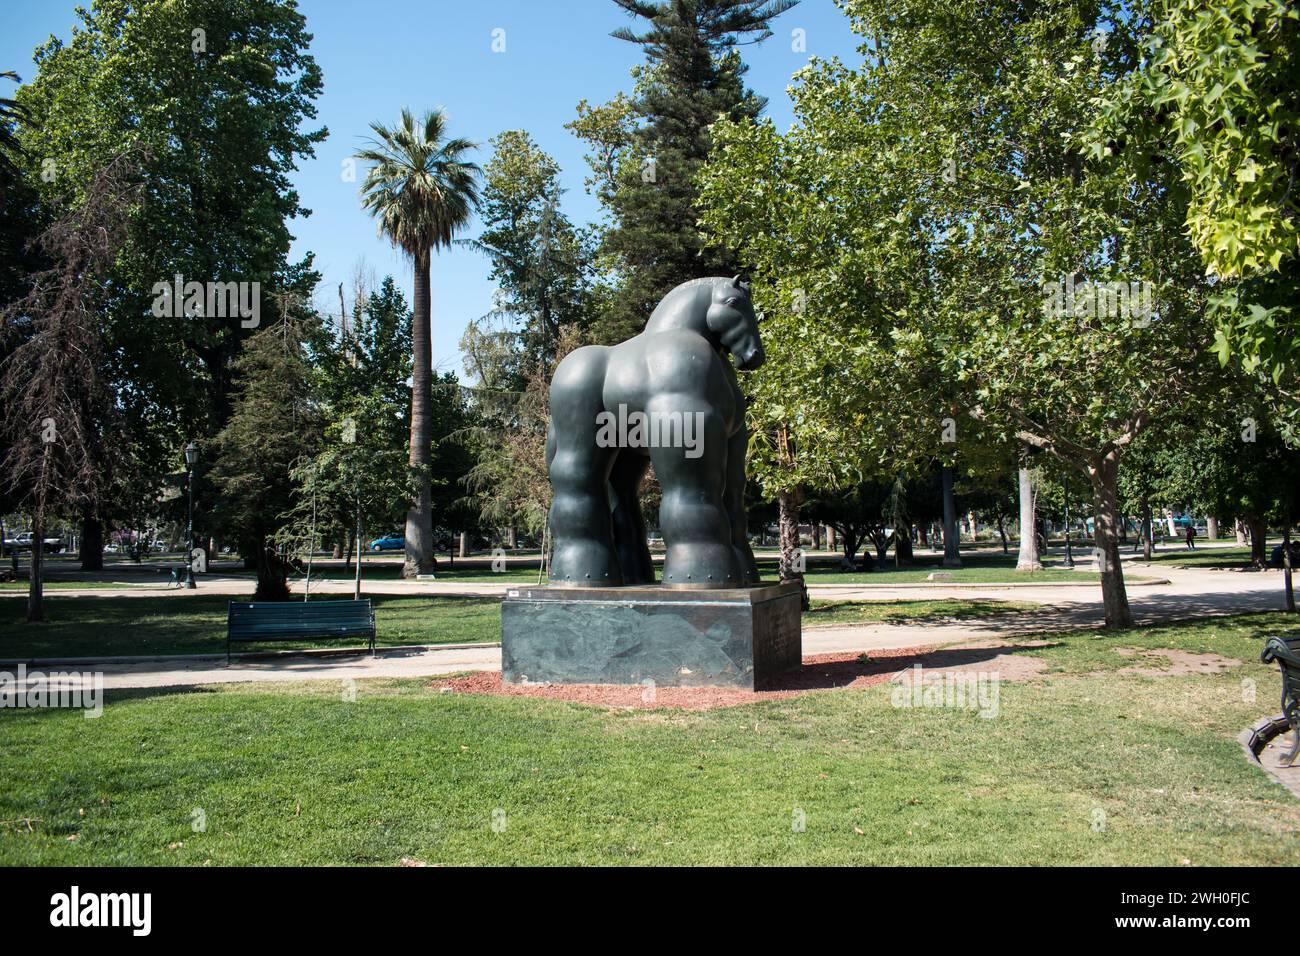 La célèbre sculpture équine de Fernando Botero dans le Parque Forestal de Santiago Banque D'Images